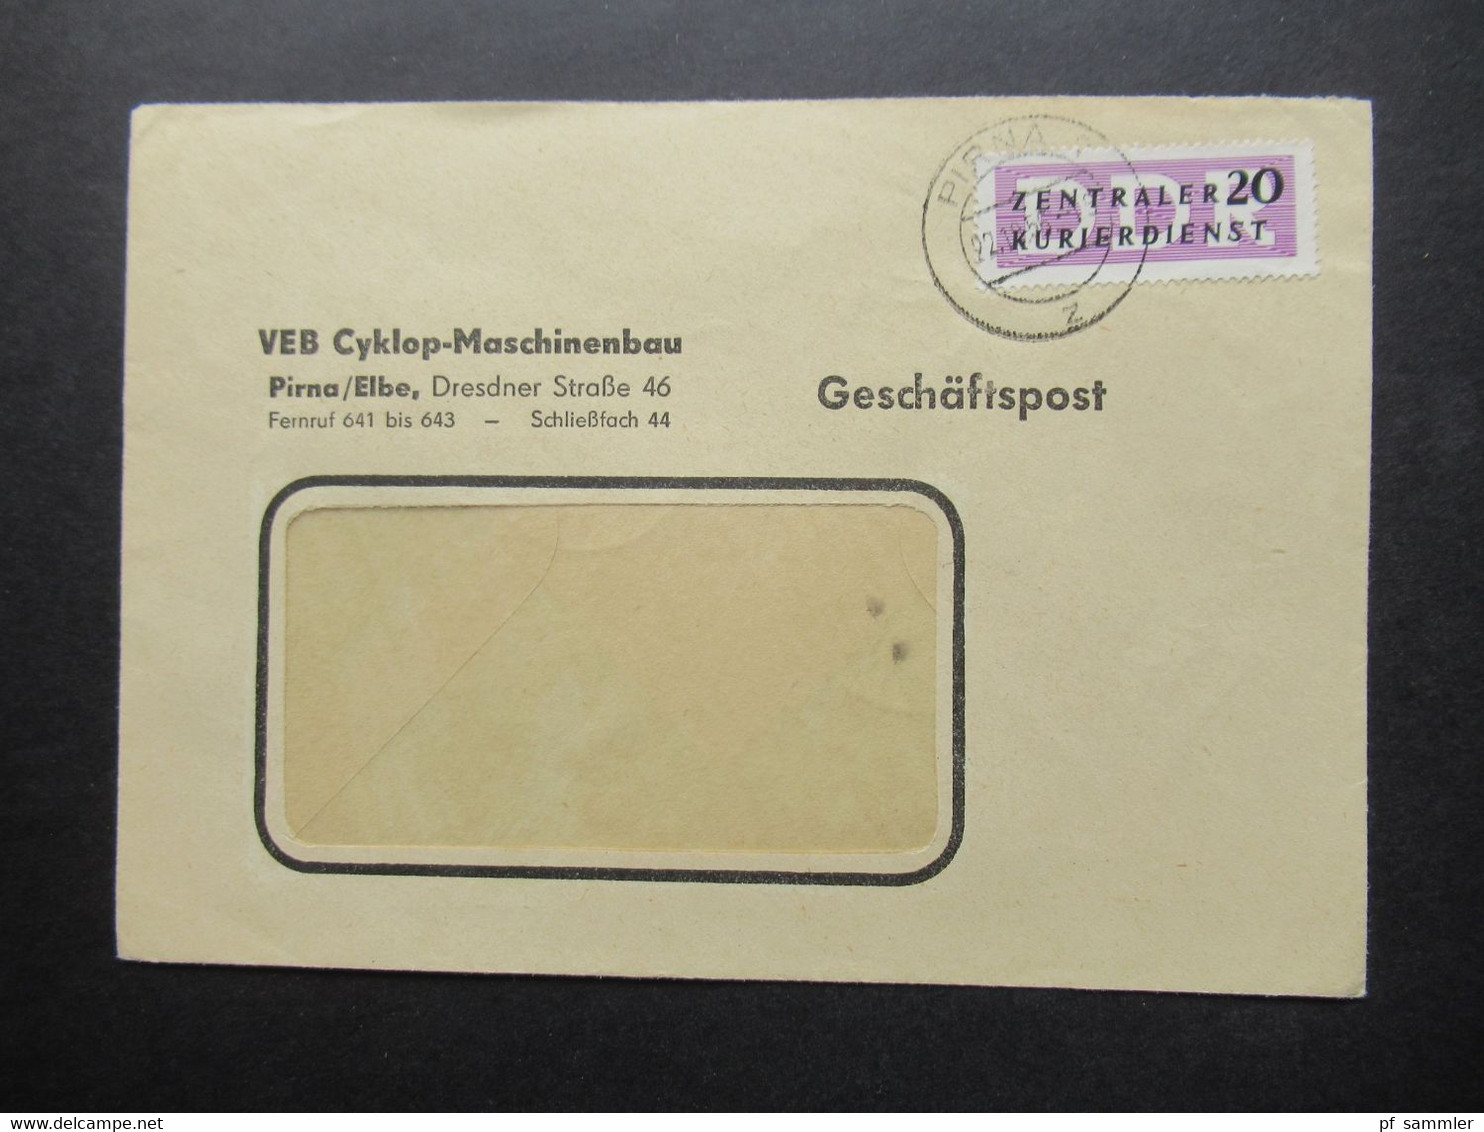 DDR 1956 / 57 Dienstmarken ZKD mit / ohne Aufdruck und ZKD Belege / Behördenpost 60 / 70er Jahre insg. 115 Belege